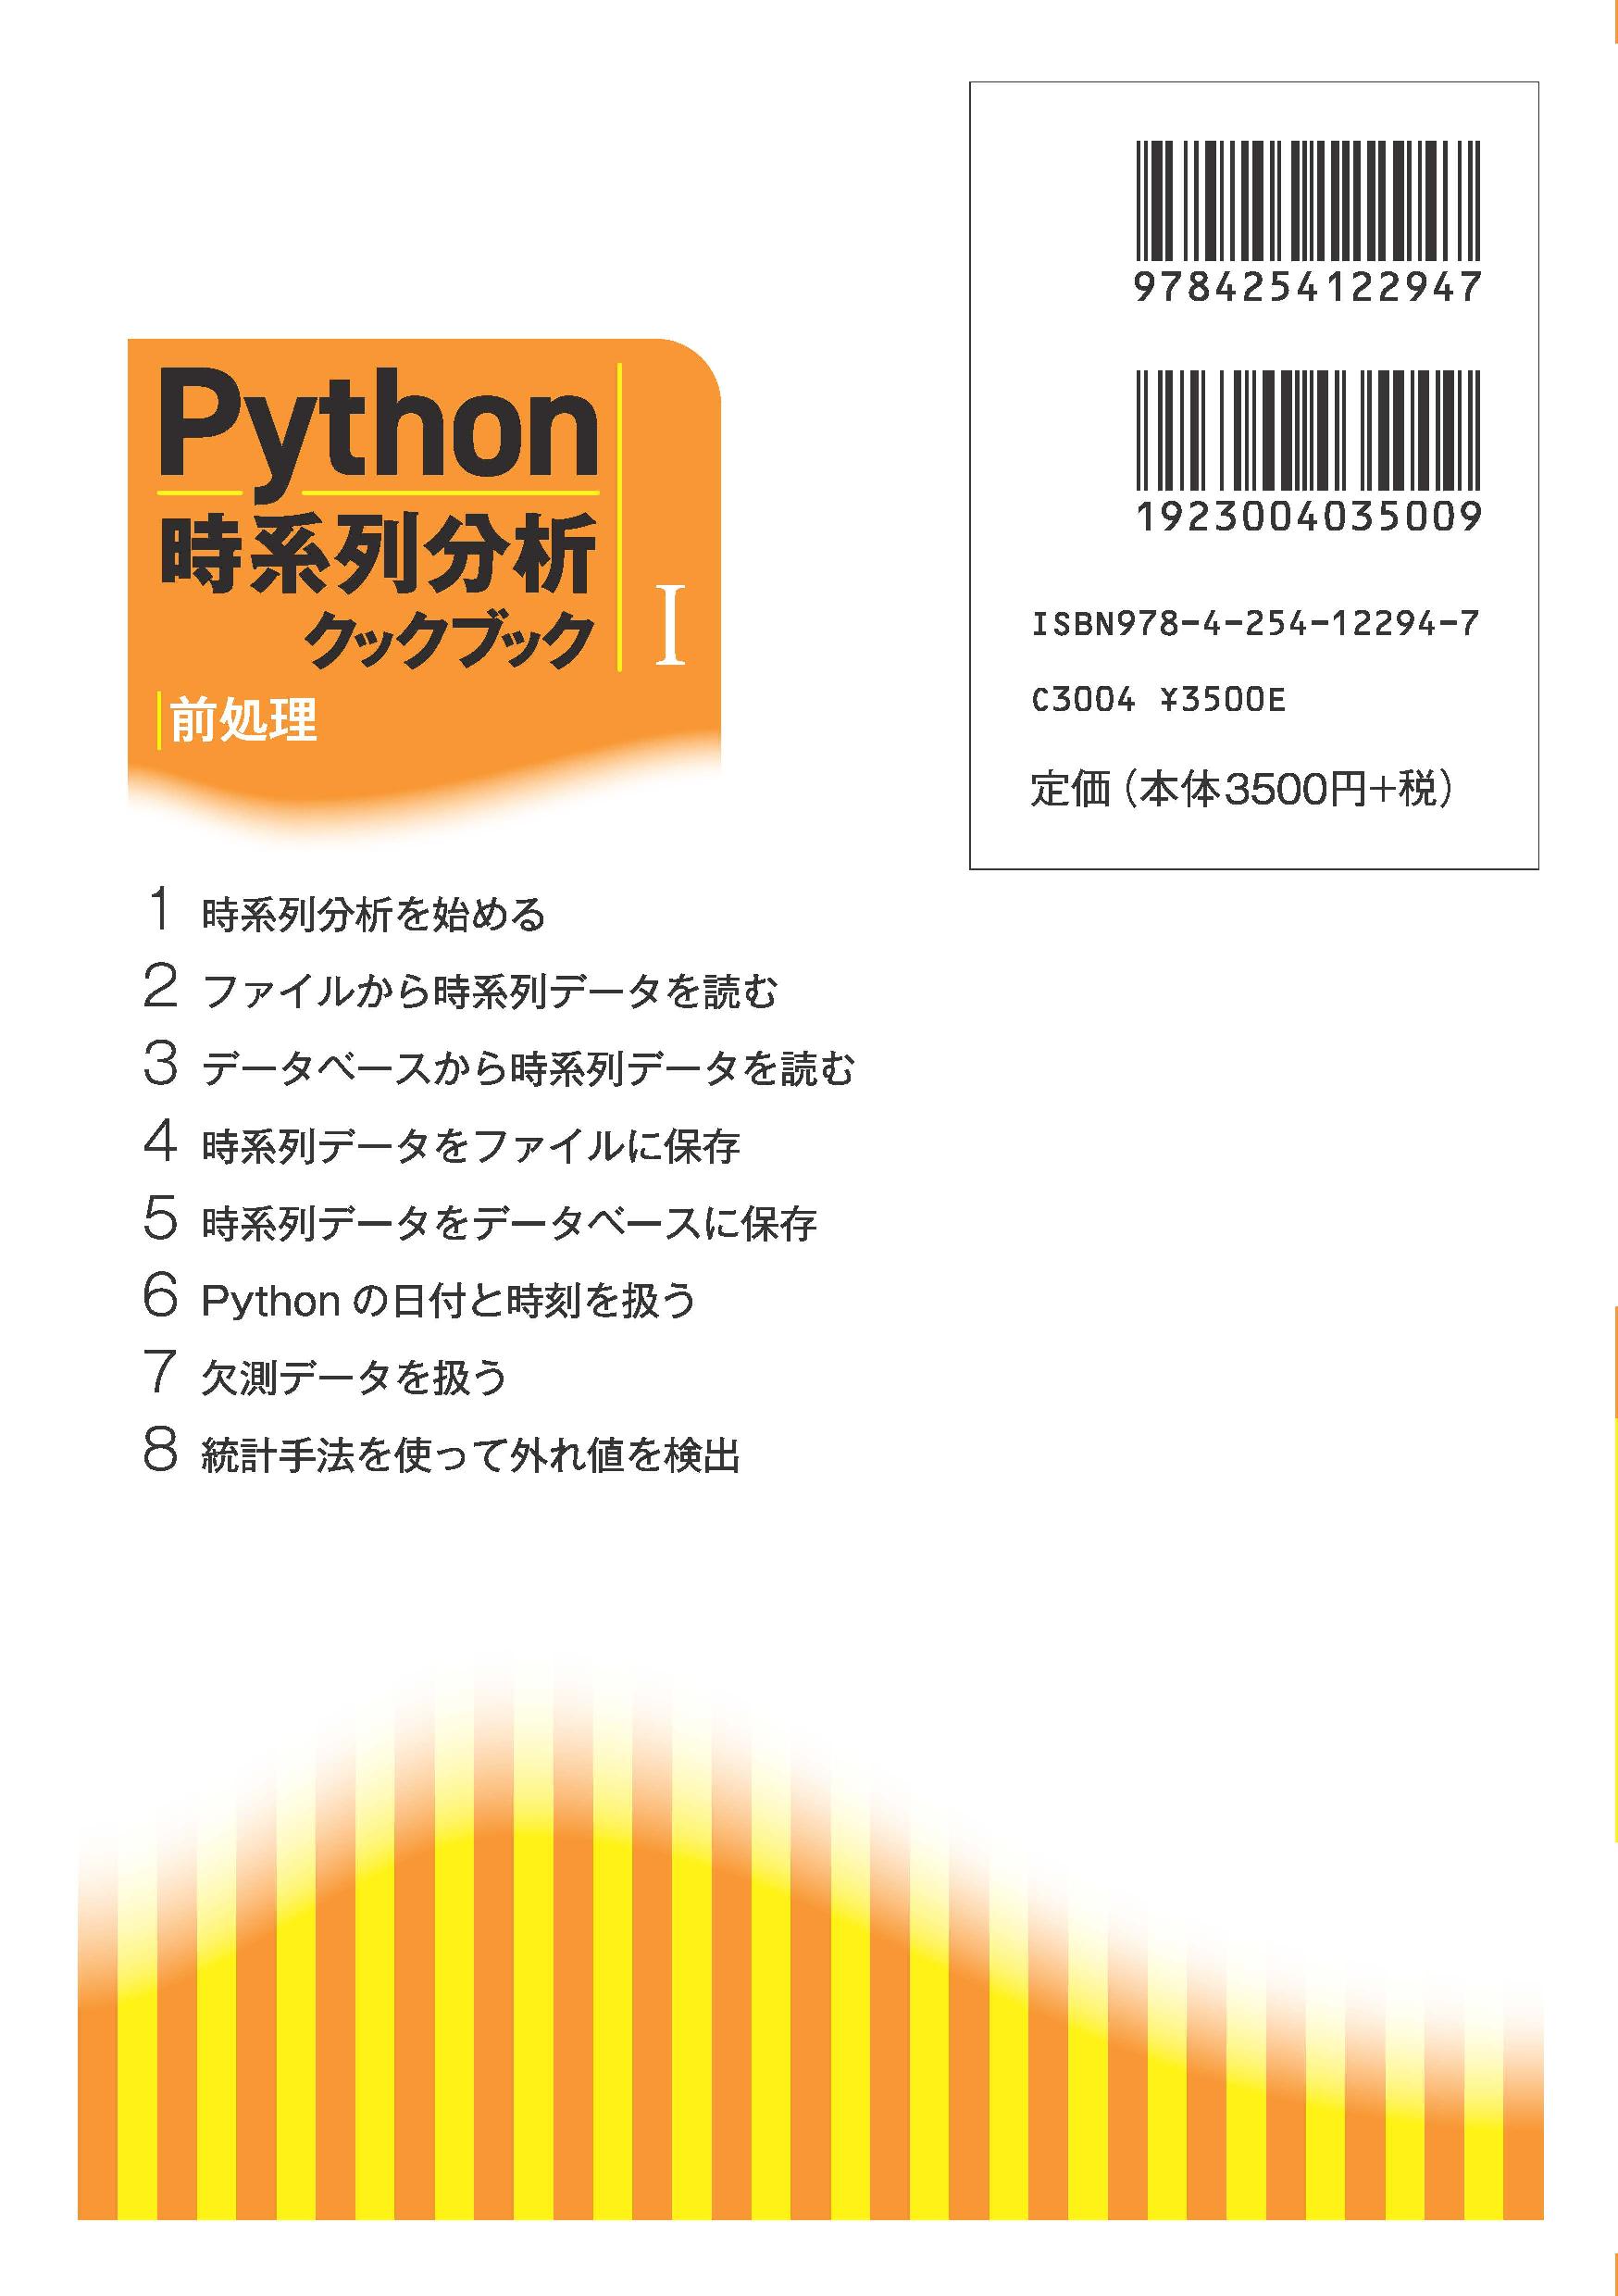 写真 : Python時系列分析クックブック I 